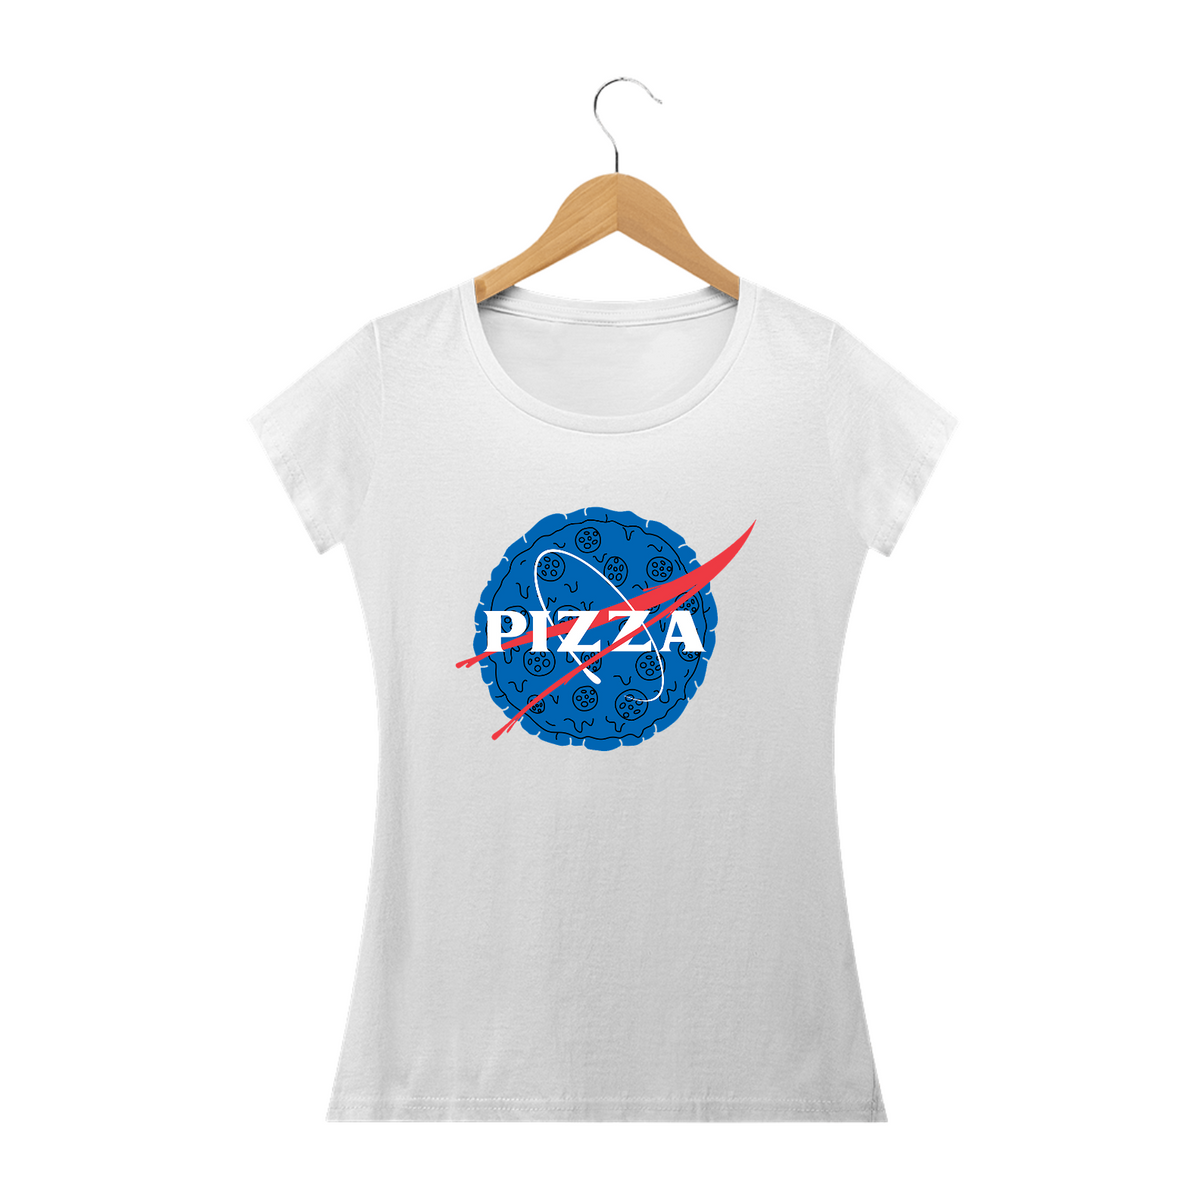 Nome do produto: Camisa Phood Baby Look - Pizza (Nasa)